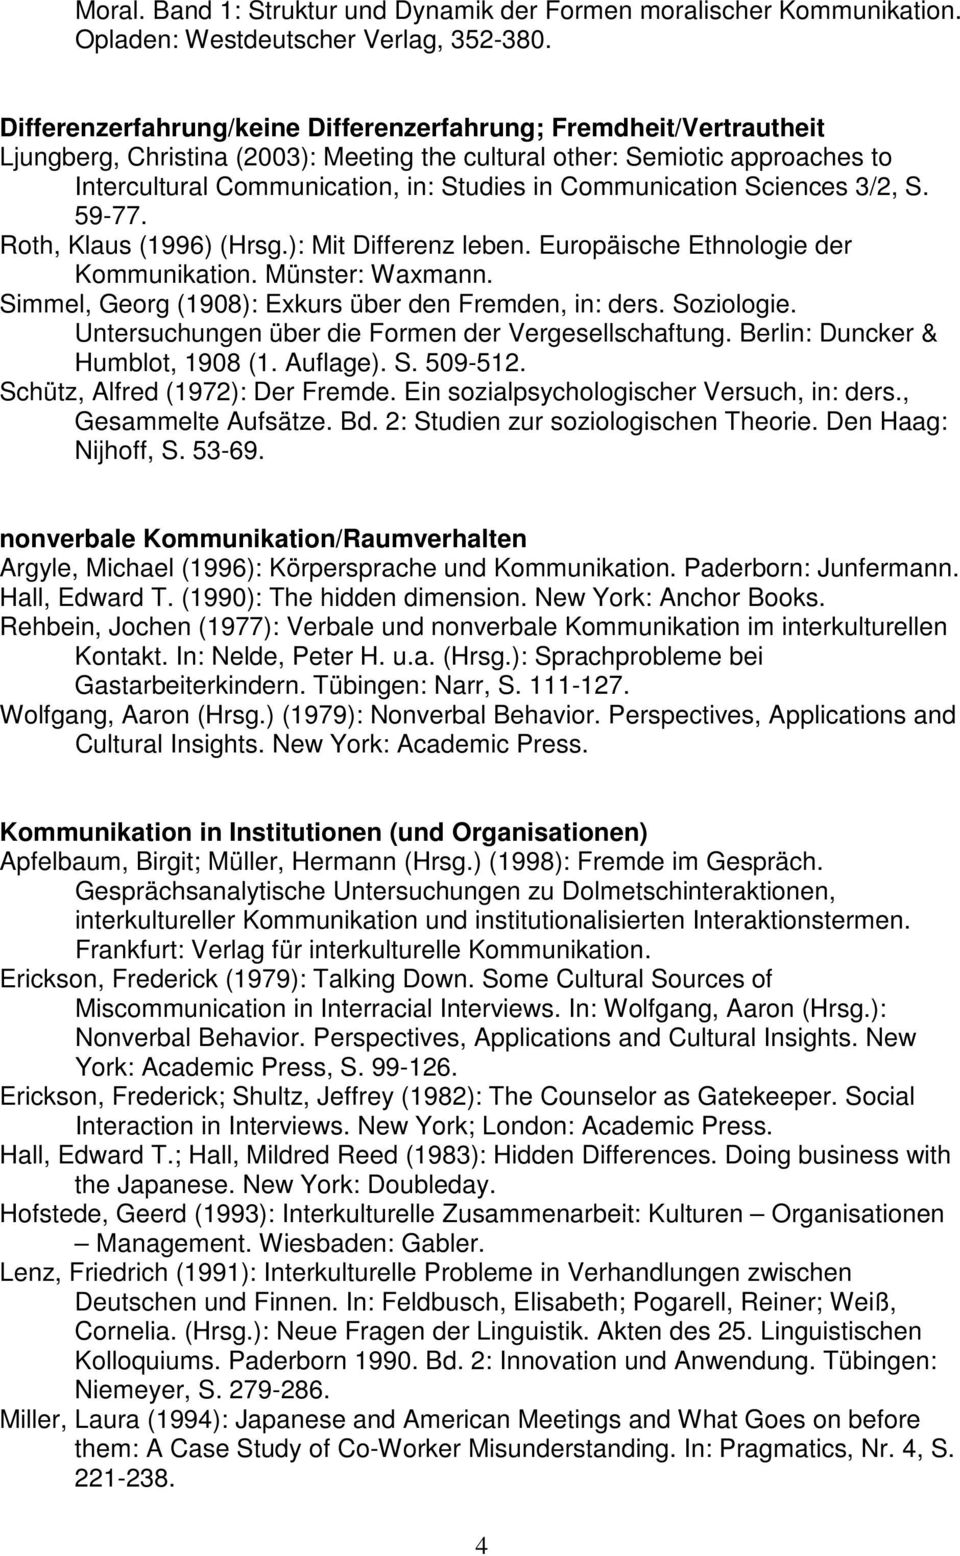 Communication Sciences 3/2, S. 59-77. Roth, Klaus (1996) (Hrsg.): Mit Differenz leben. Europäische Ethnologie der Kommunikation. Münster: Waxmann.